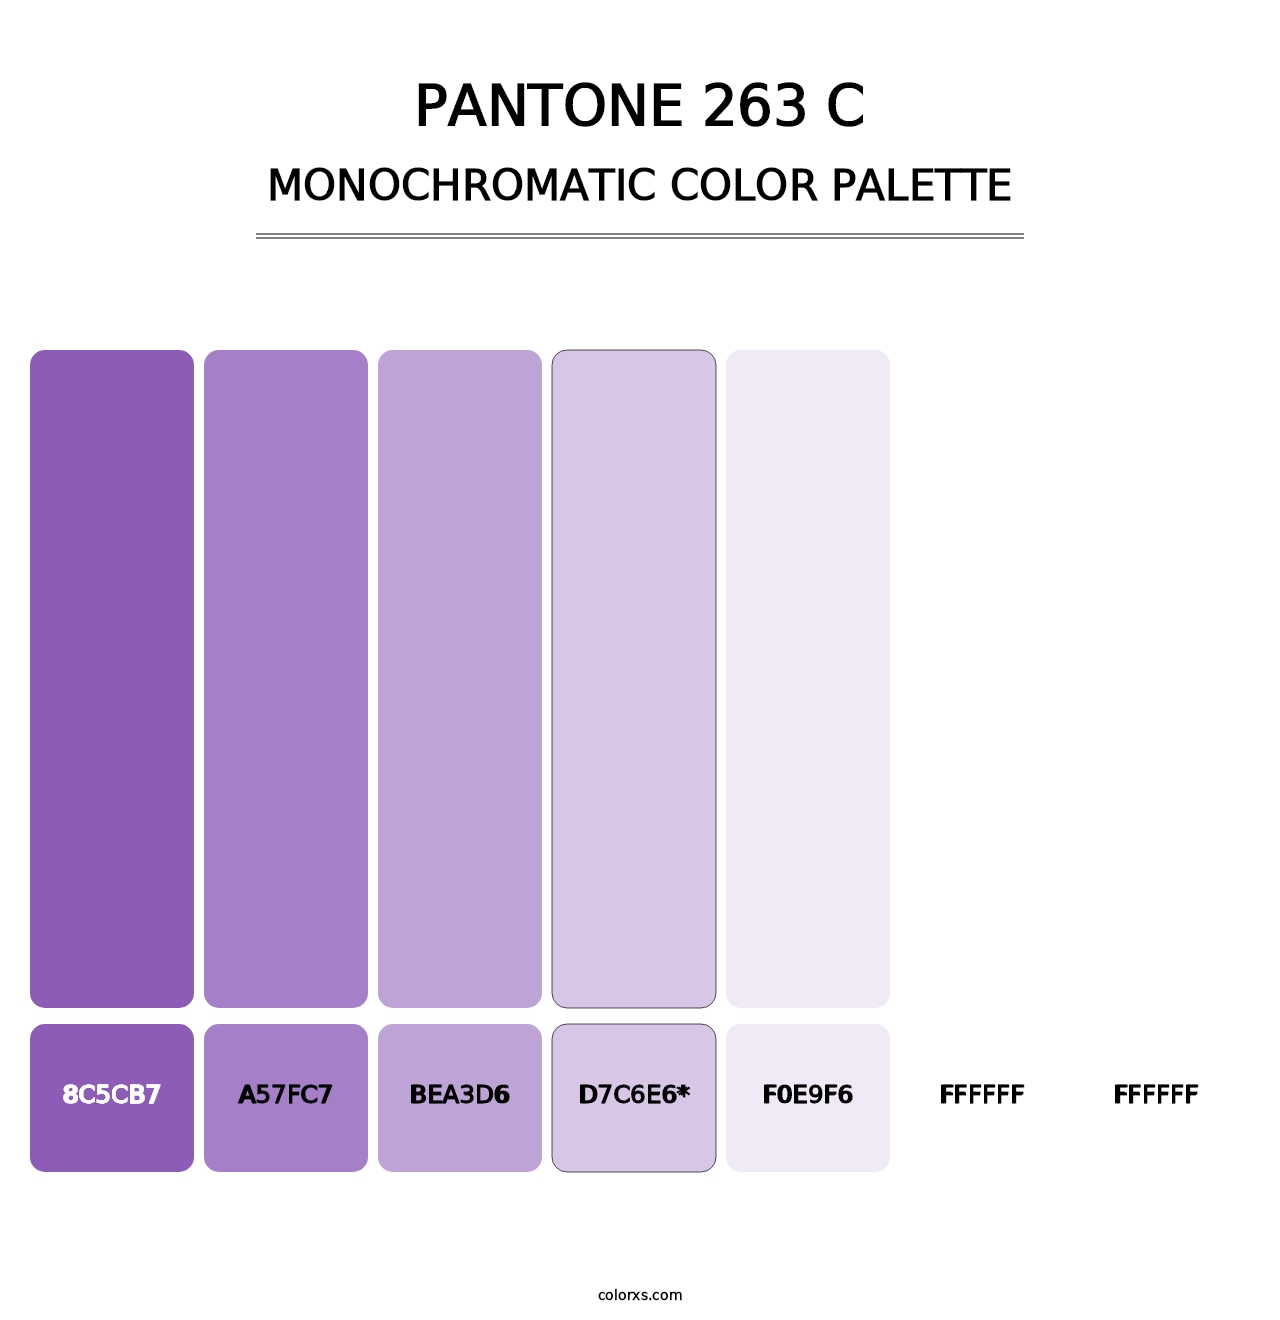 PANTONE 263 C - Monochromatic Color Palette